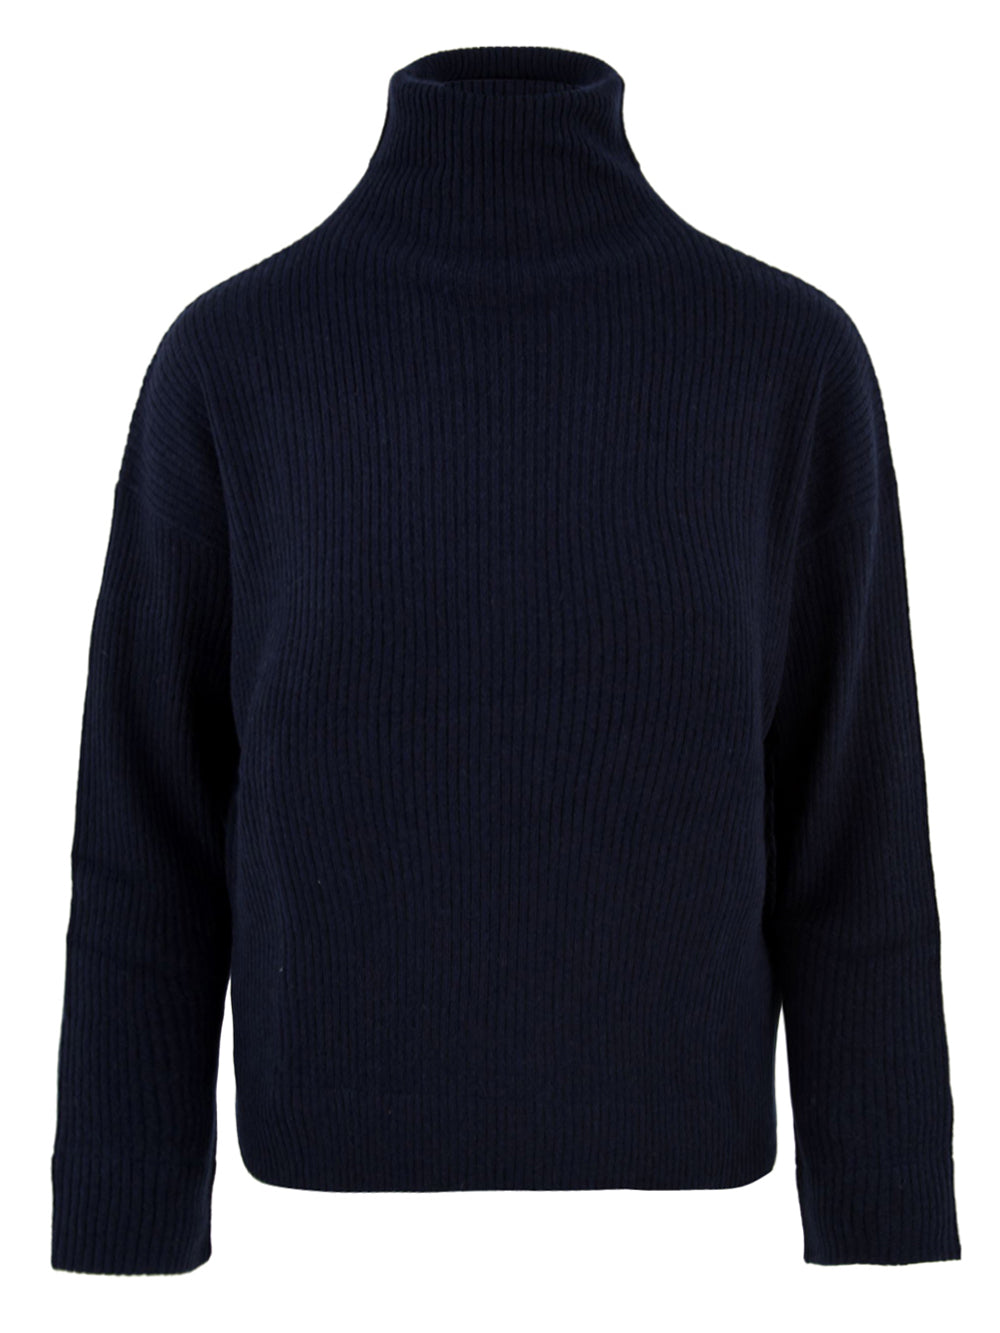 Immagine frontale del maglione Yulia Not Shy in blu,a costine,collo alto e realizzato cashmere